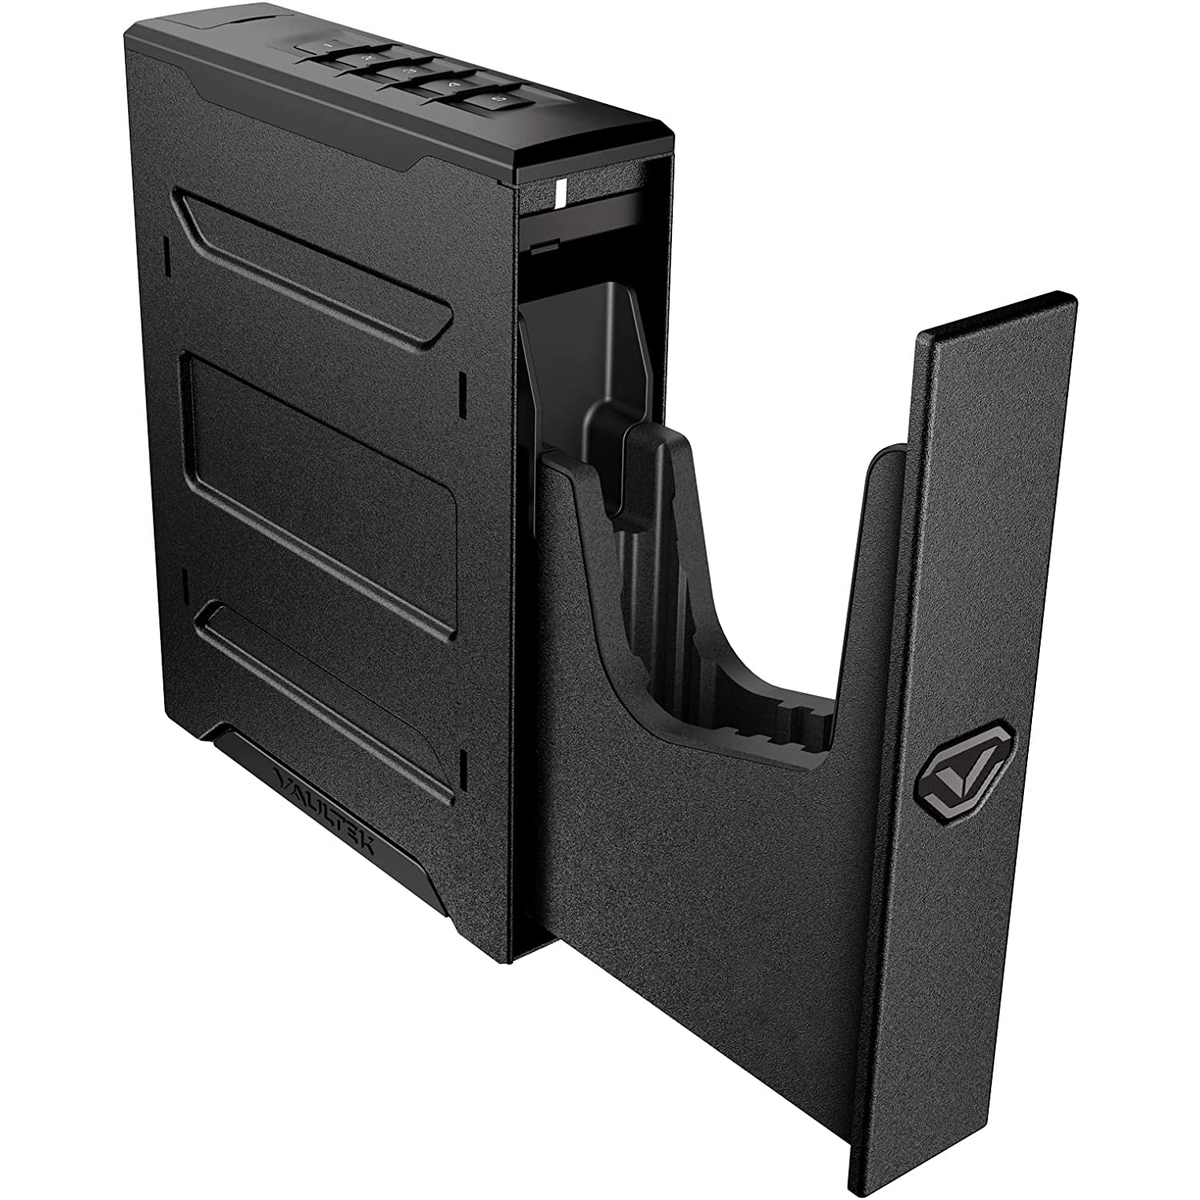 Vaultek- SE20 Quick Access Slider Gun Safe